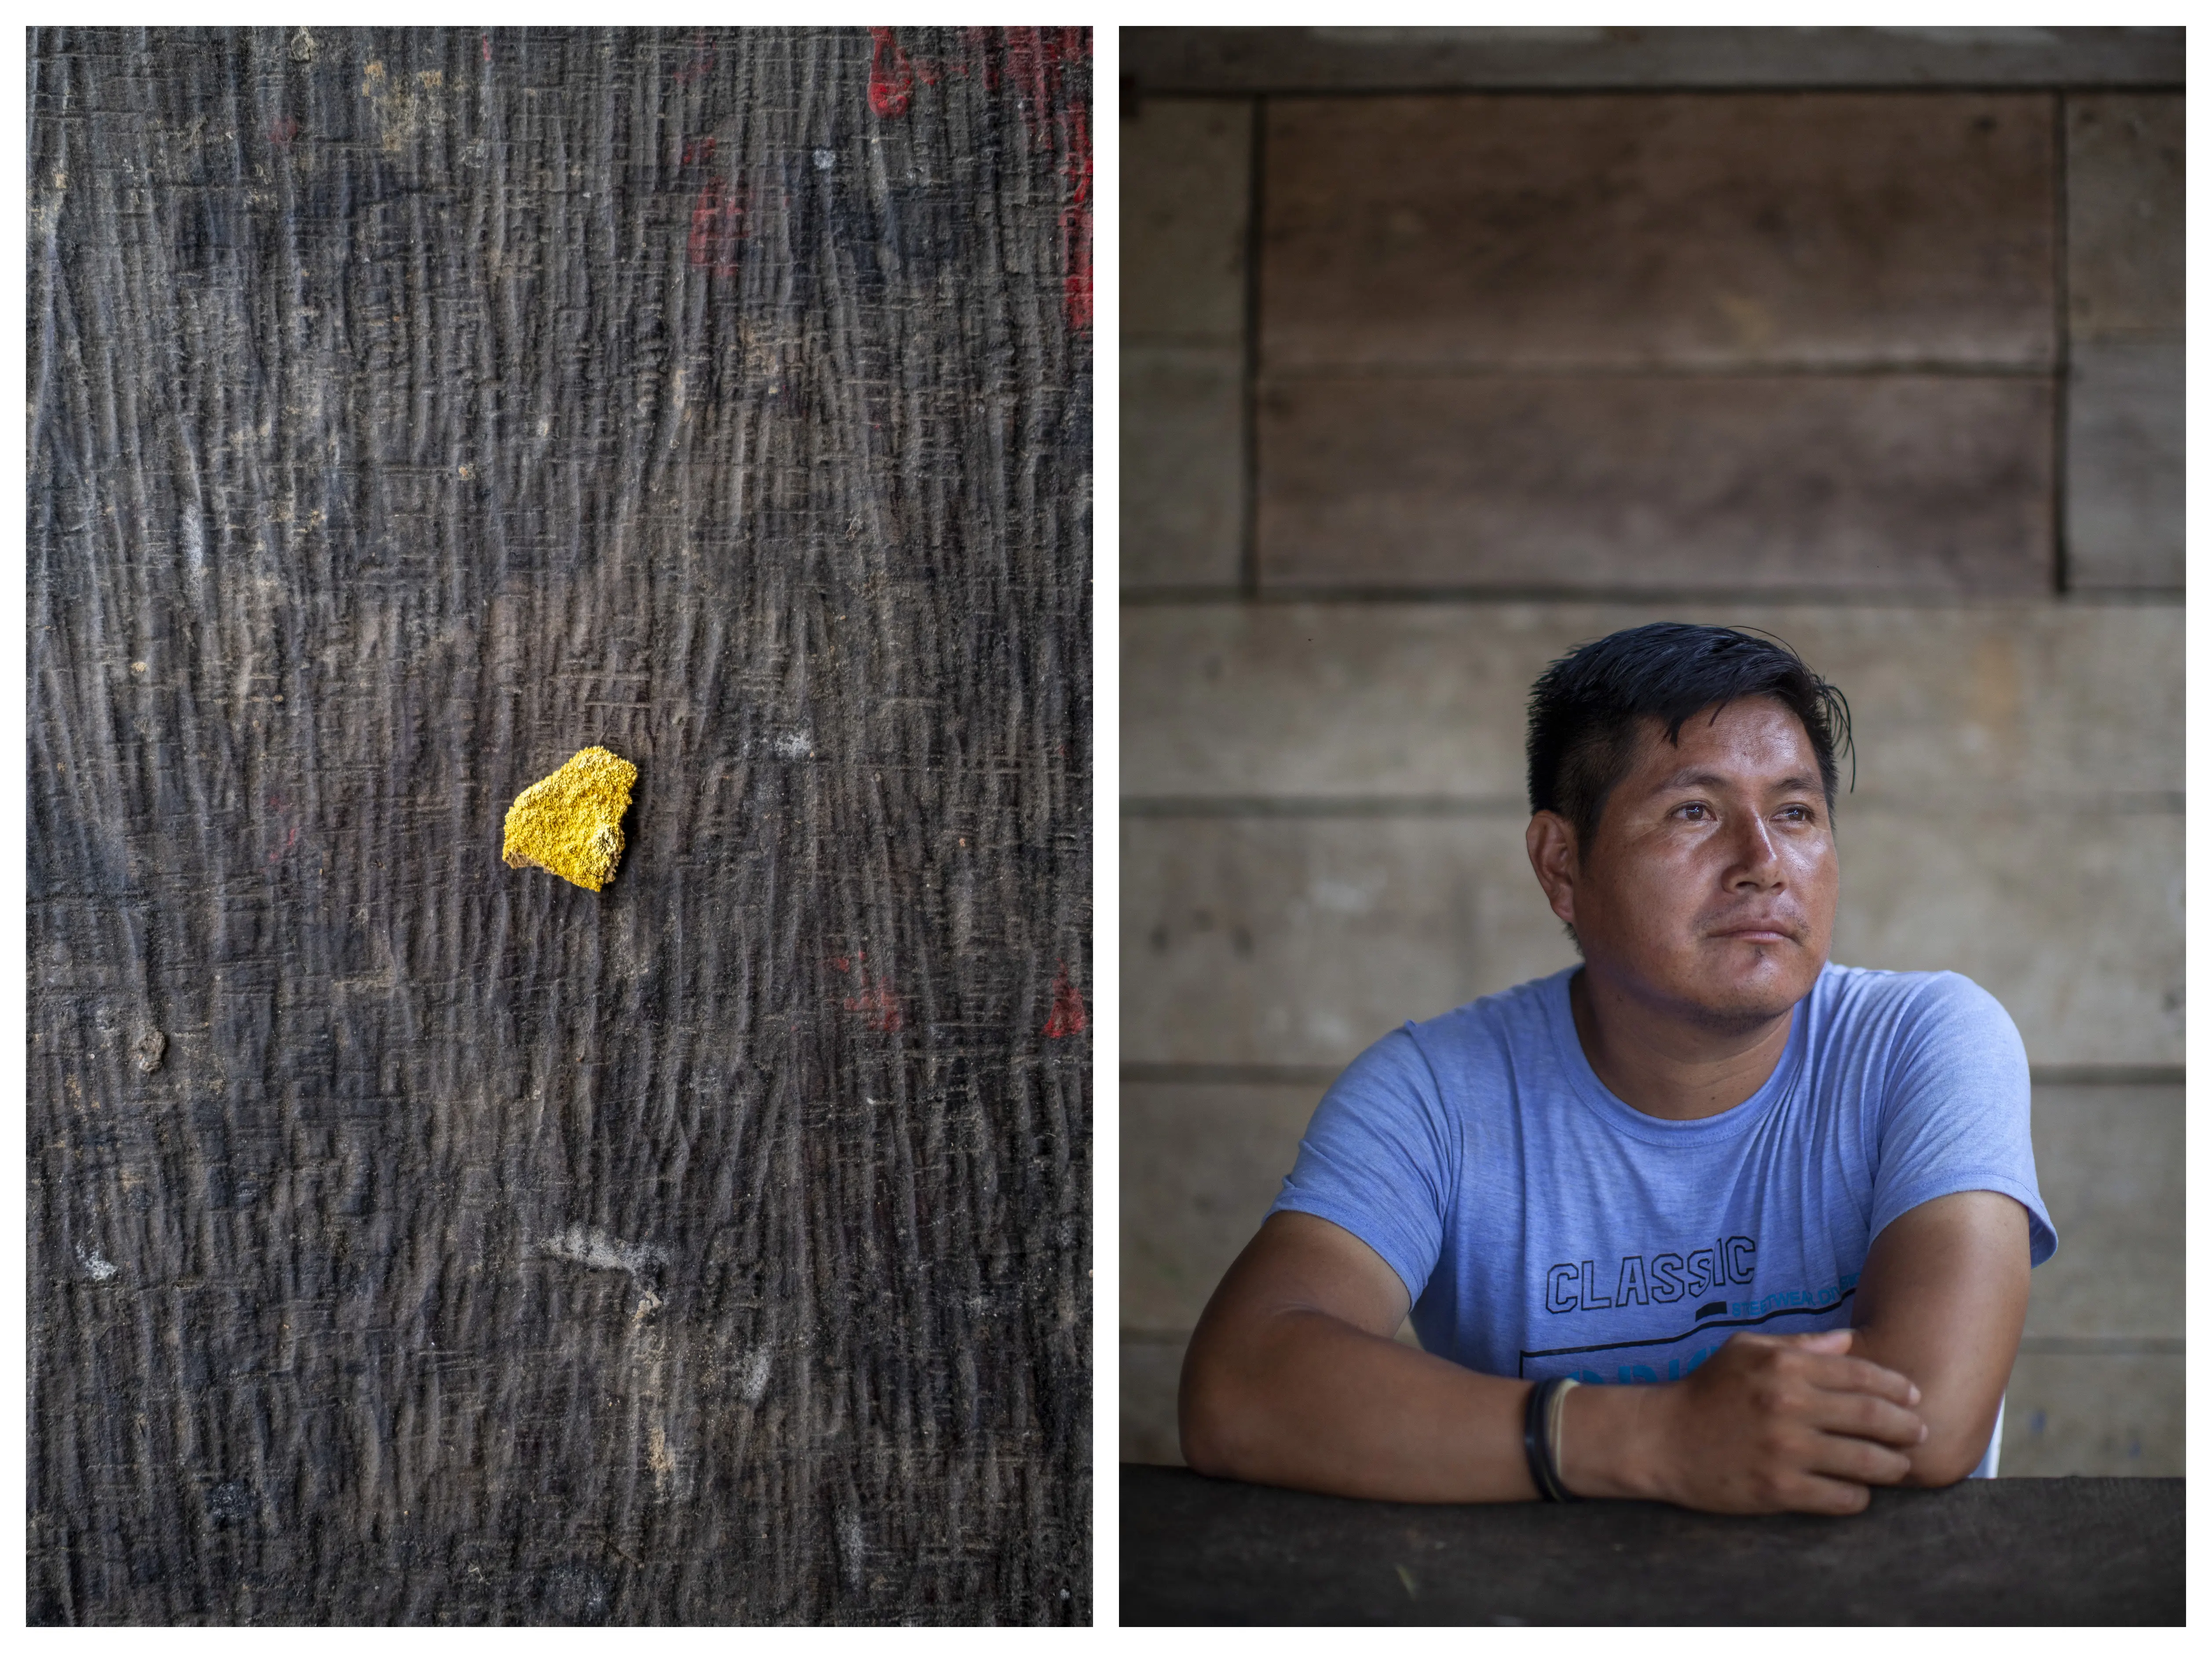 Izquierda: un copo de oro sobre una veta de madera oscura. A la derecha: Larri Ihuizi Keontehuari, presidente de la comunidad Harakmbut de Puerto Luz.